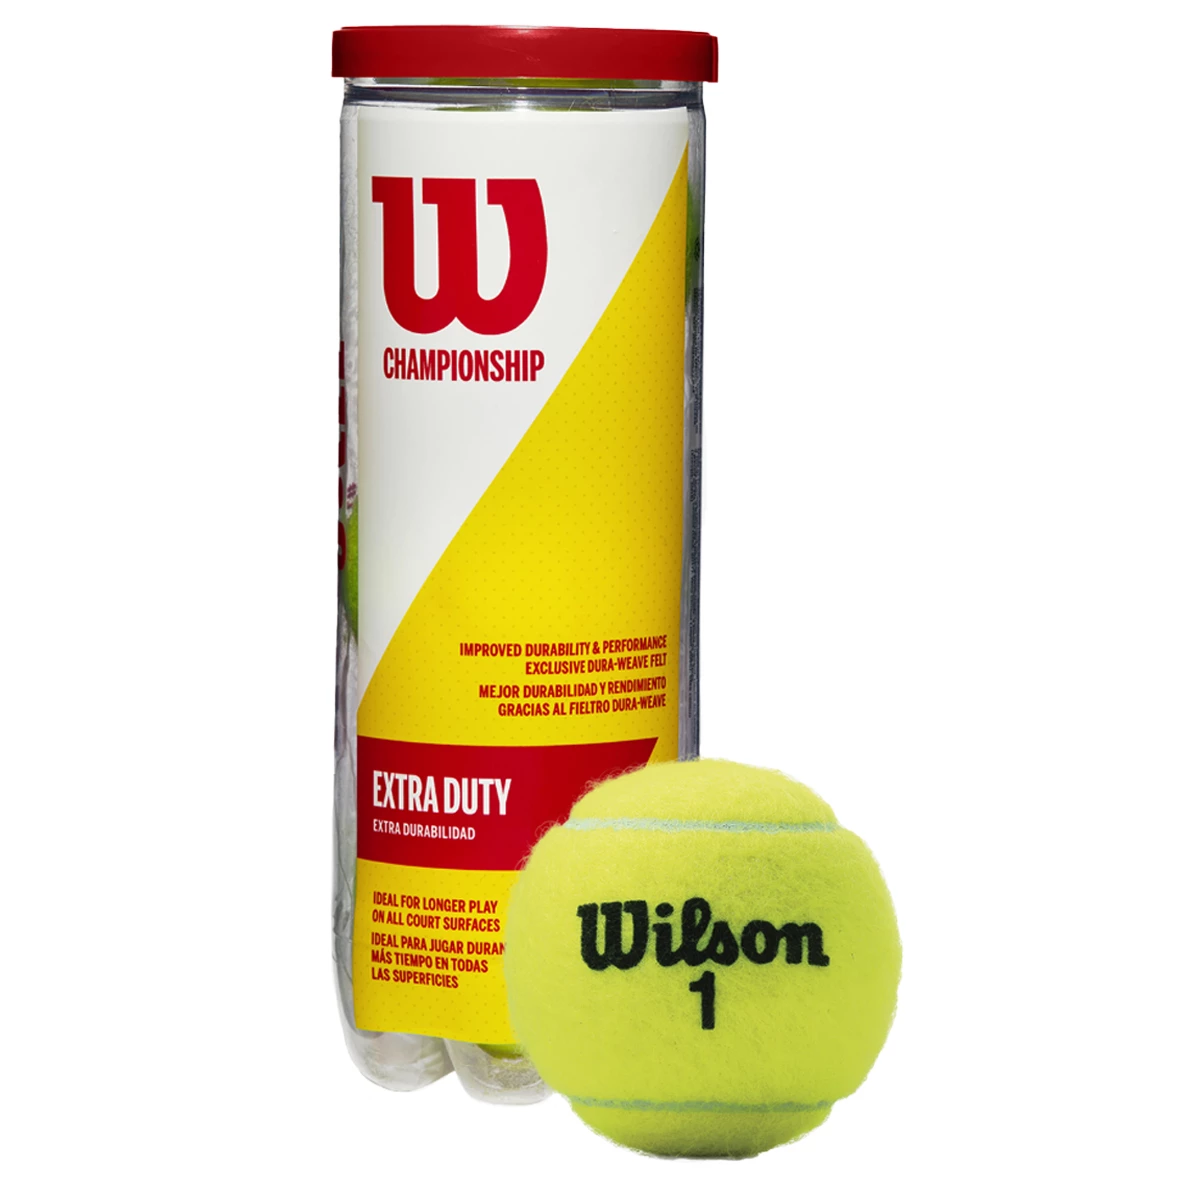 Afbeelding van Wilson Championship xd tennisbal 3 stuks